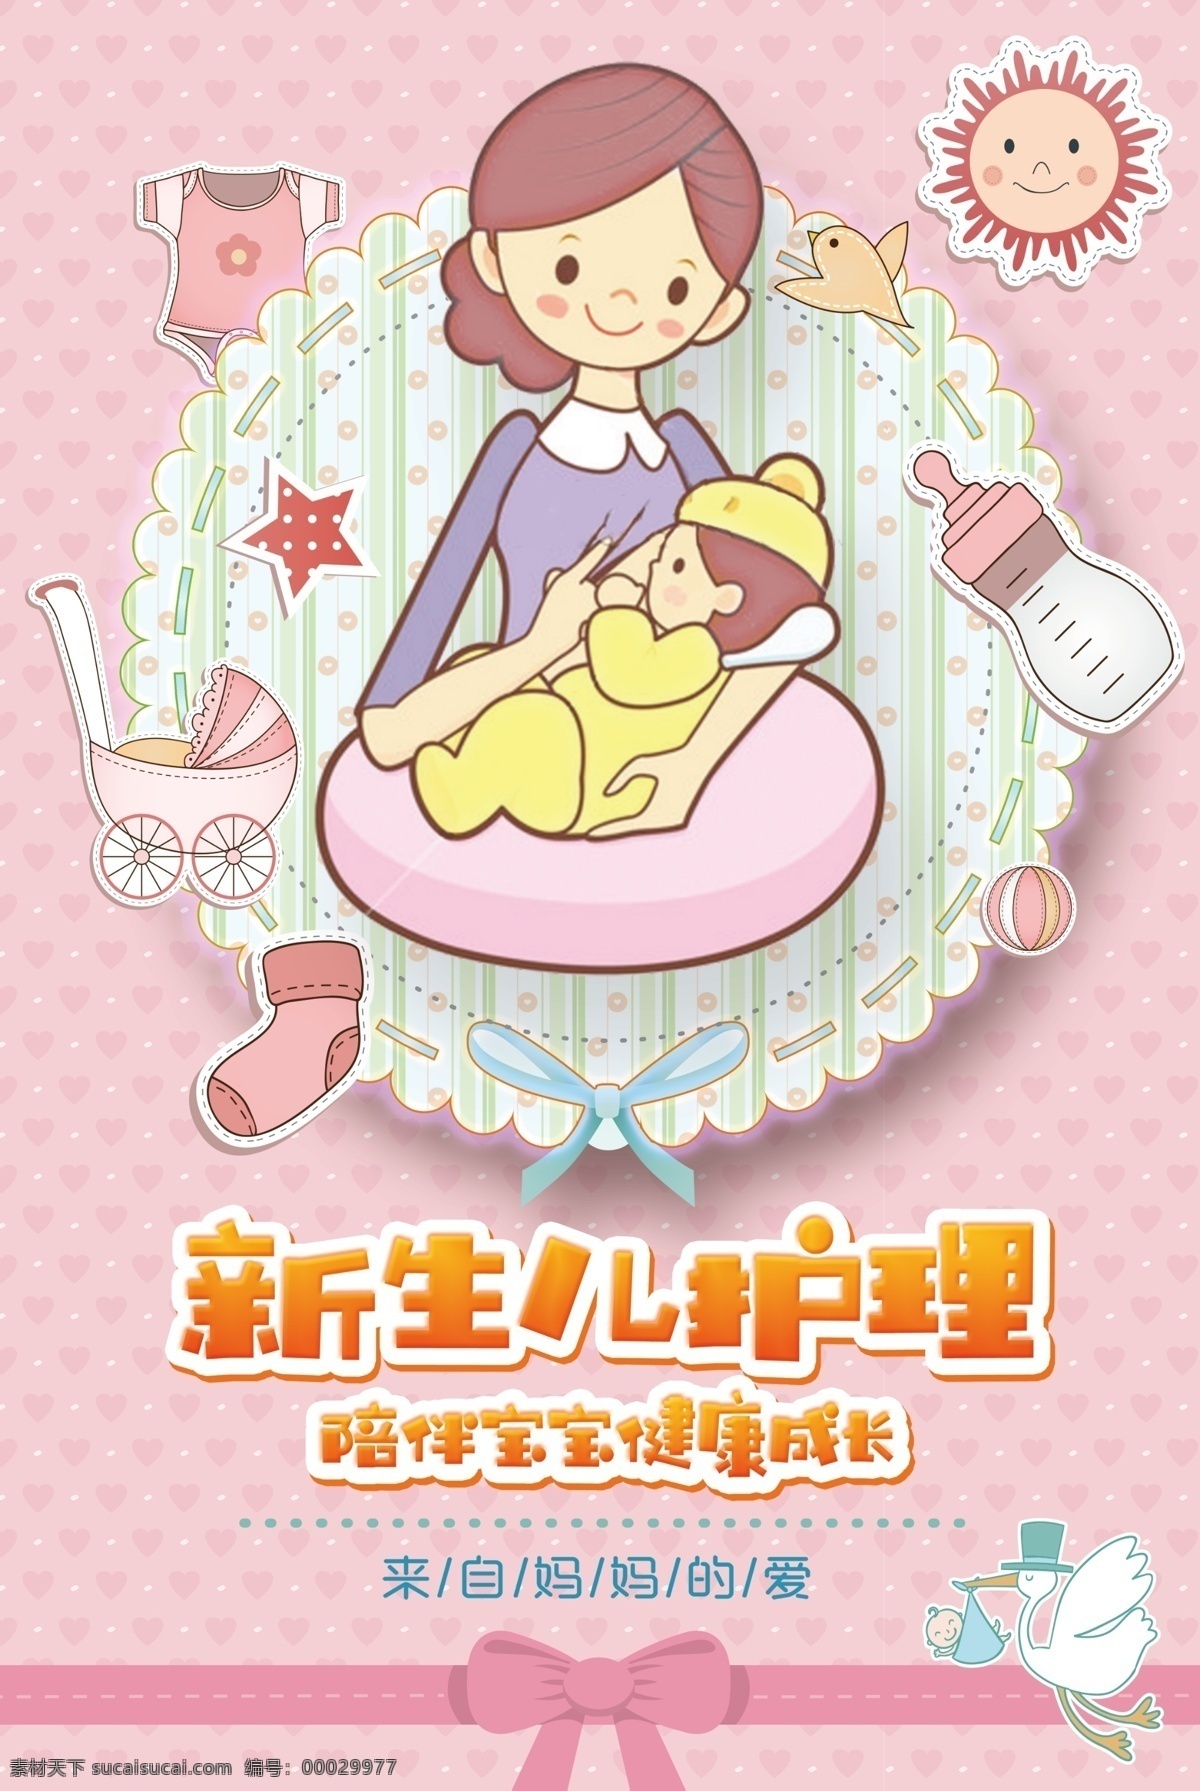 婴儿护理 母婴室 标牌 标识 箭头 粉色背景 分层